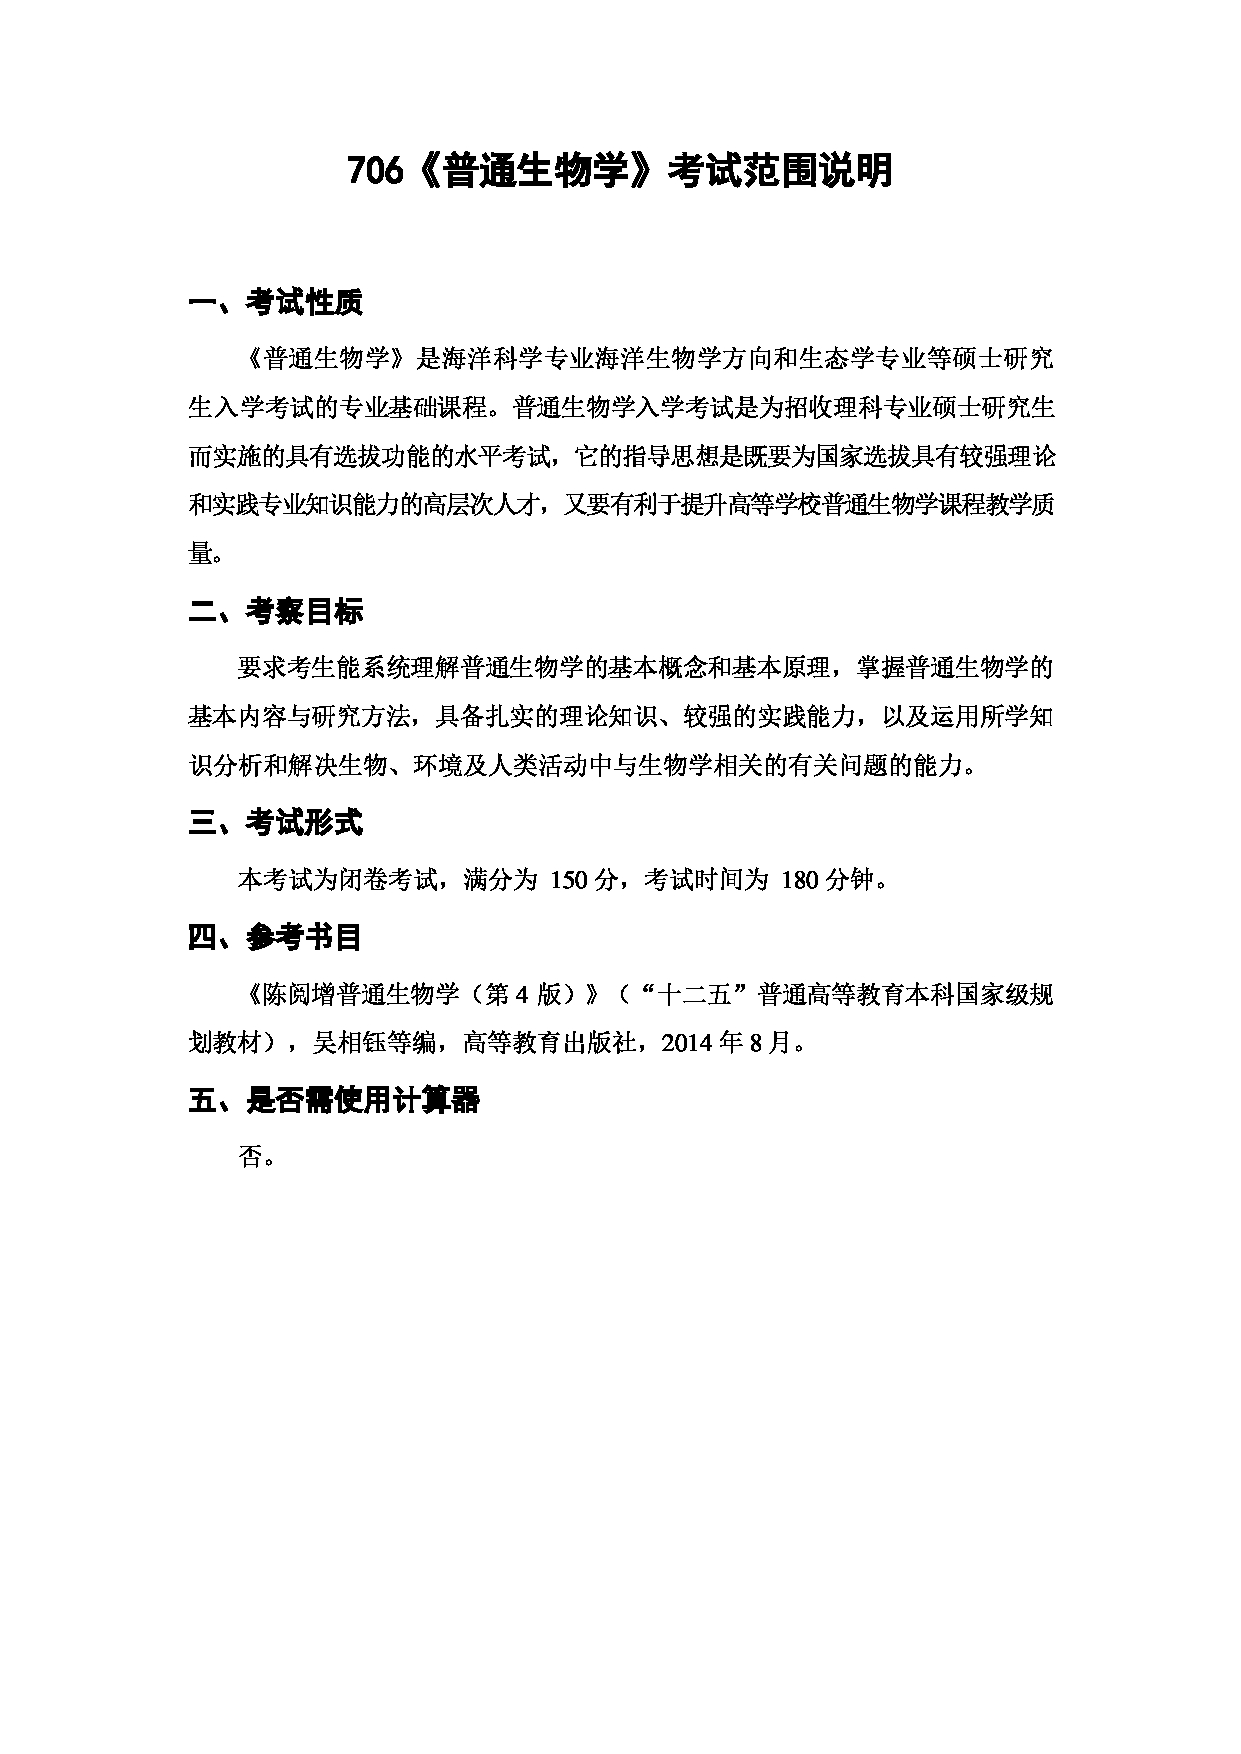 上海海洋大学2023年考研自命题科目 706《普通生物学》 考试范围第1页